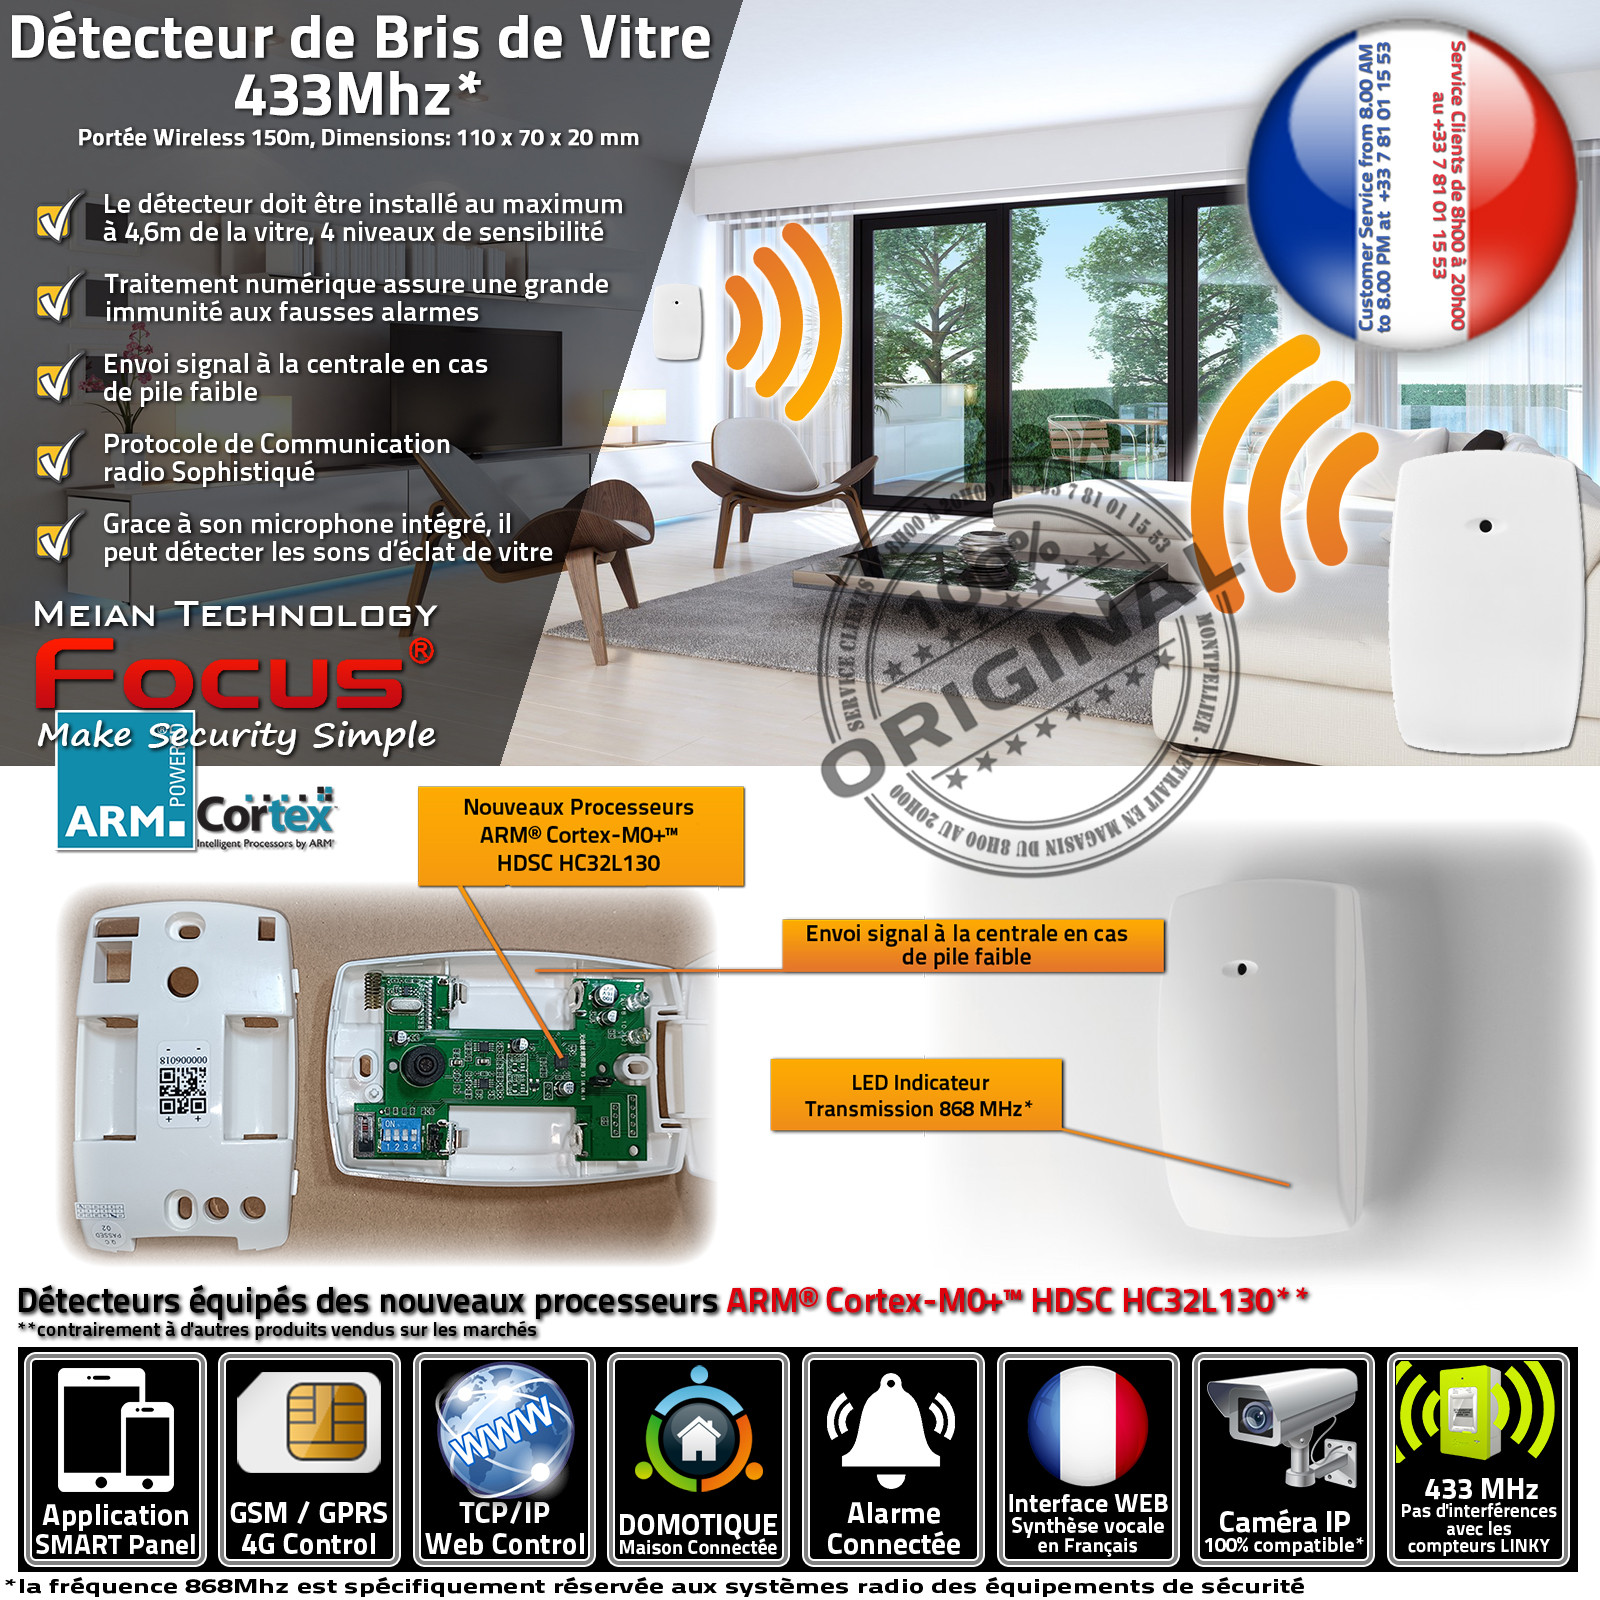 Détection Bris de vitre MD-343R Sans Fil Sonde Domotique Alarme FOCUS Meian Système Sécurité Connecté Réseau Ethernet 433MHz GSM